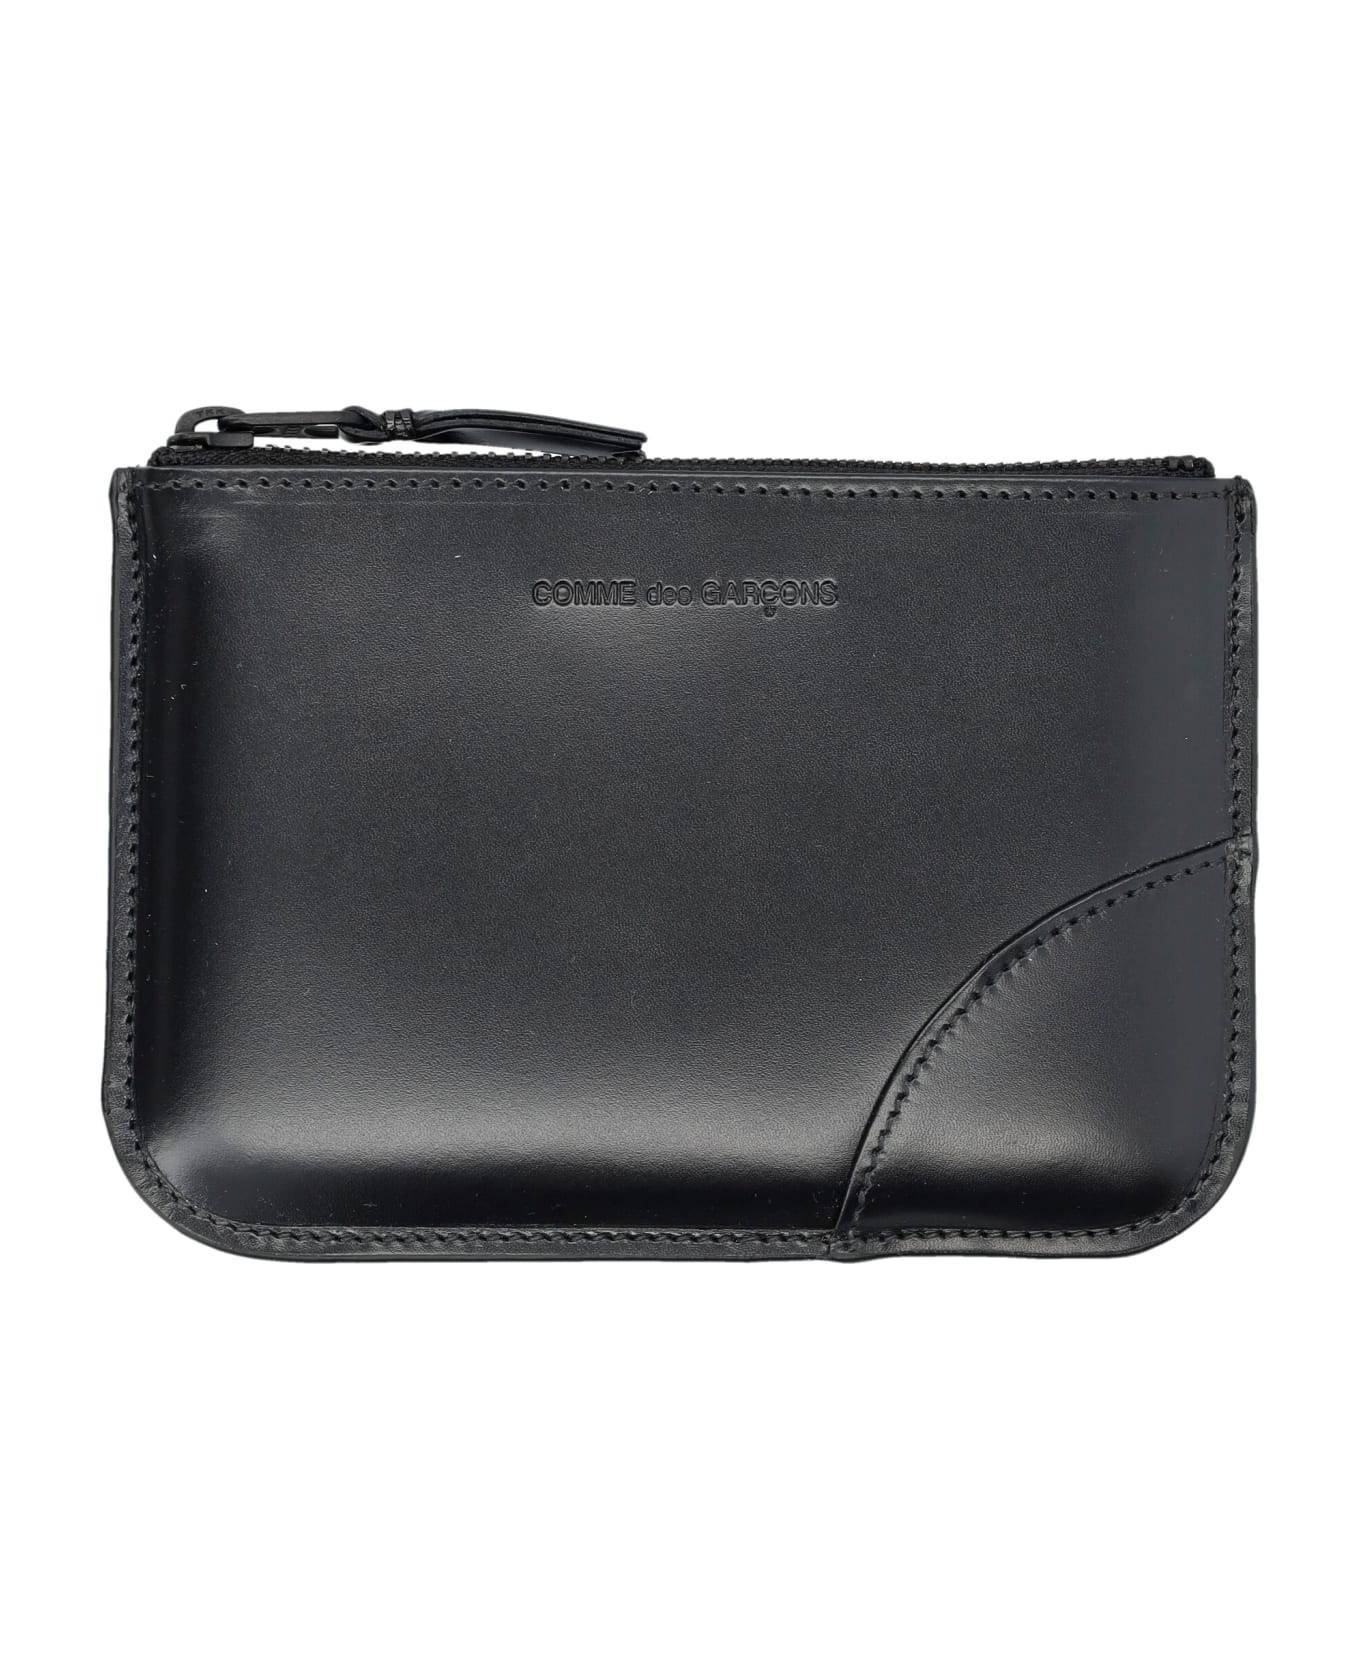 Comme des Garçons Wallet Xsmall Classic Leather Pouch - BLACK